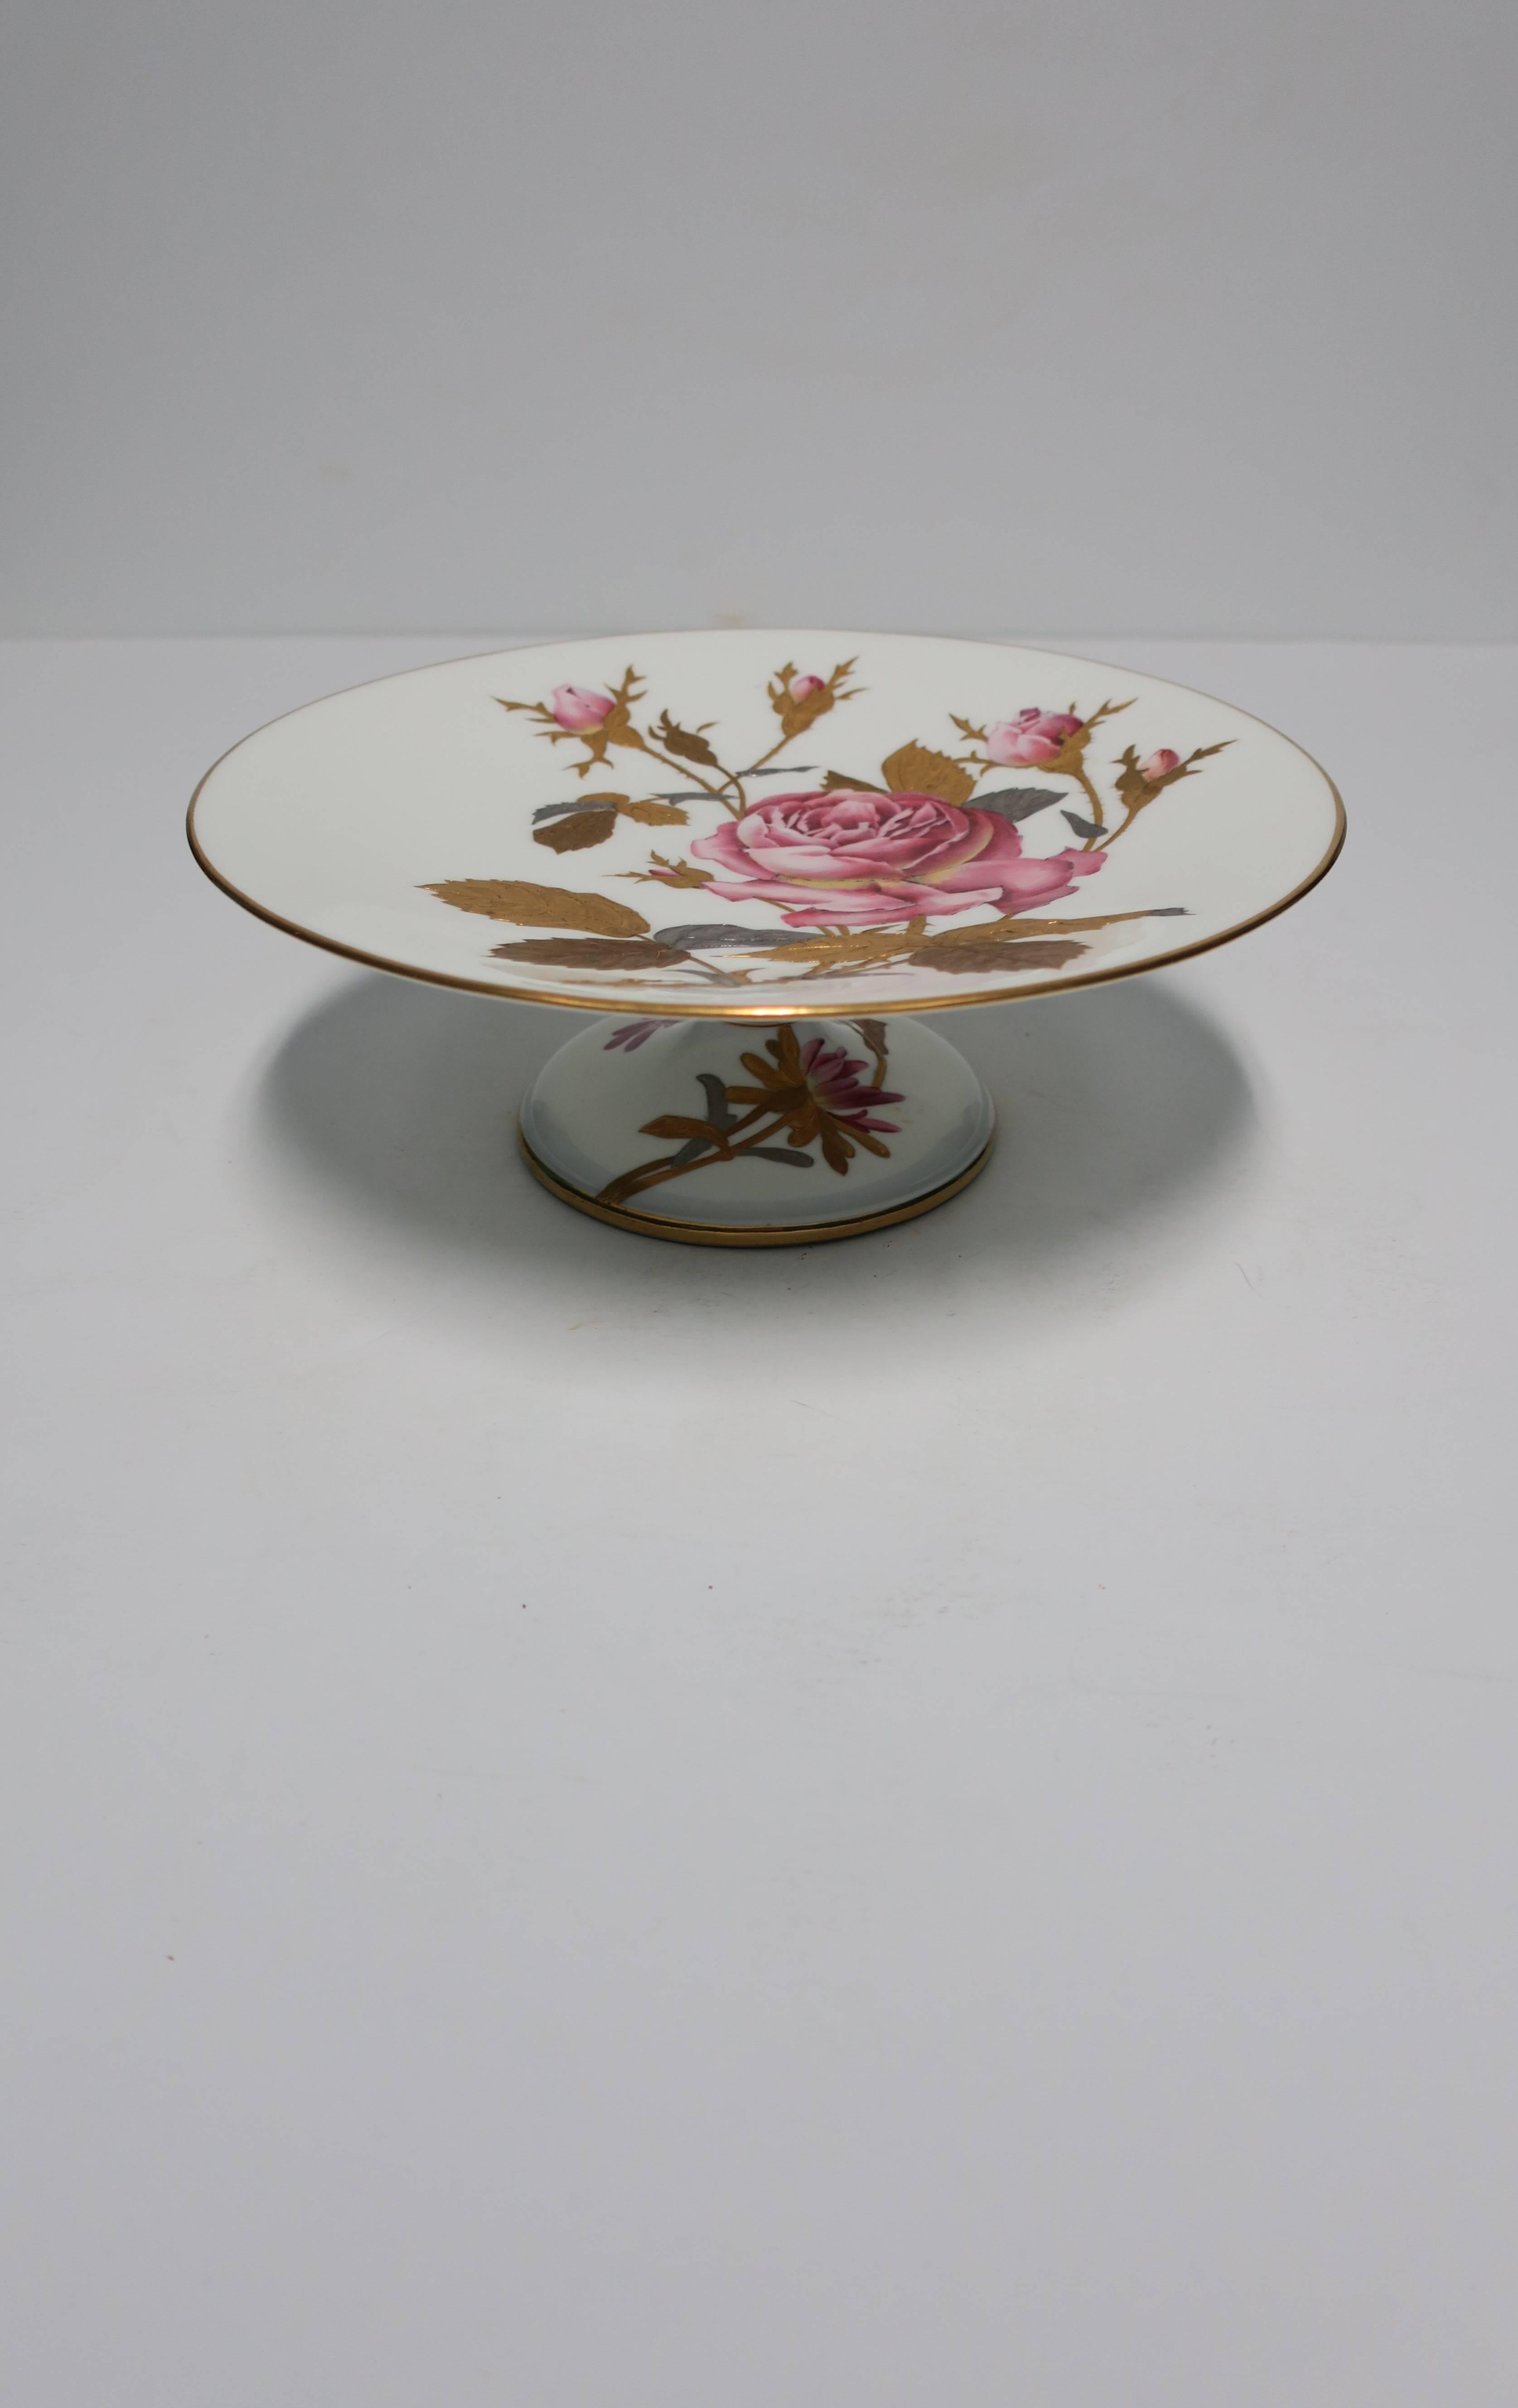 Eine schöne europäische Porzellan-Sockel Kompott oder Dessert / Kuchenplatte stehen, etwa Mitte des 20. Jahrhunderts, Europa. Das Stück ist mit rosa Rosen handbemalt, großzügig mit Gold-, Silber- und Kupferblättern vergoldet und mit einer